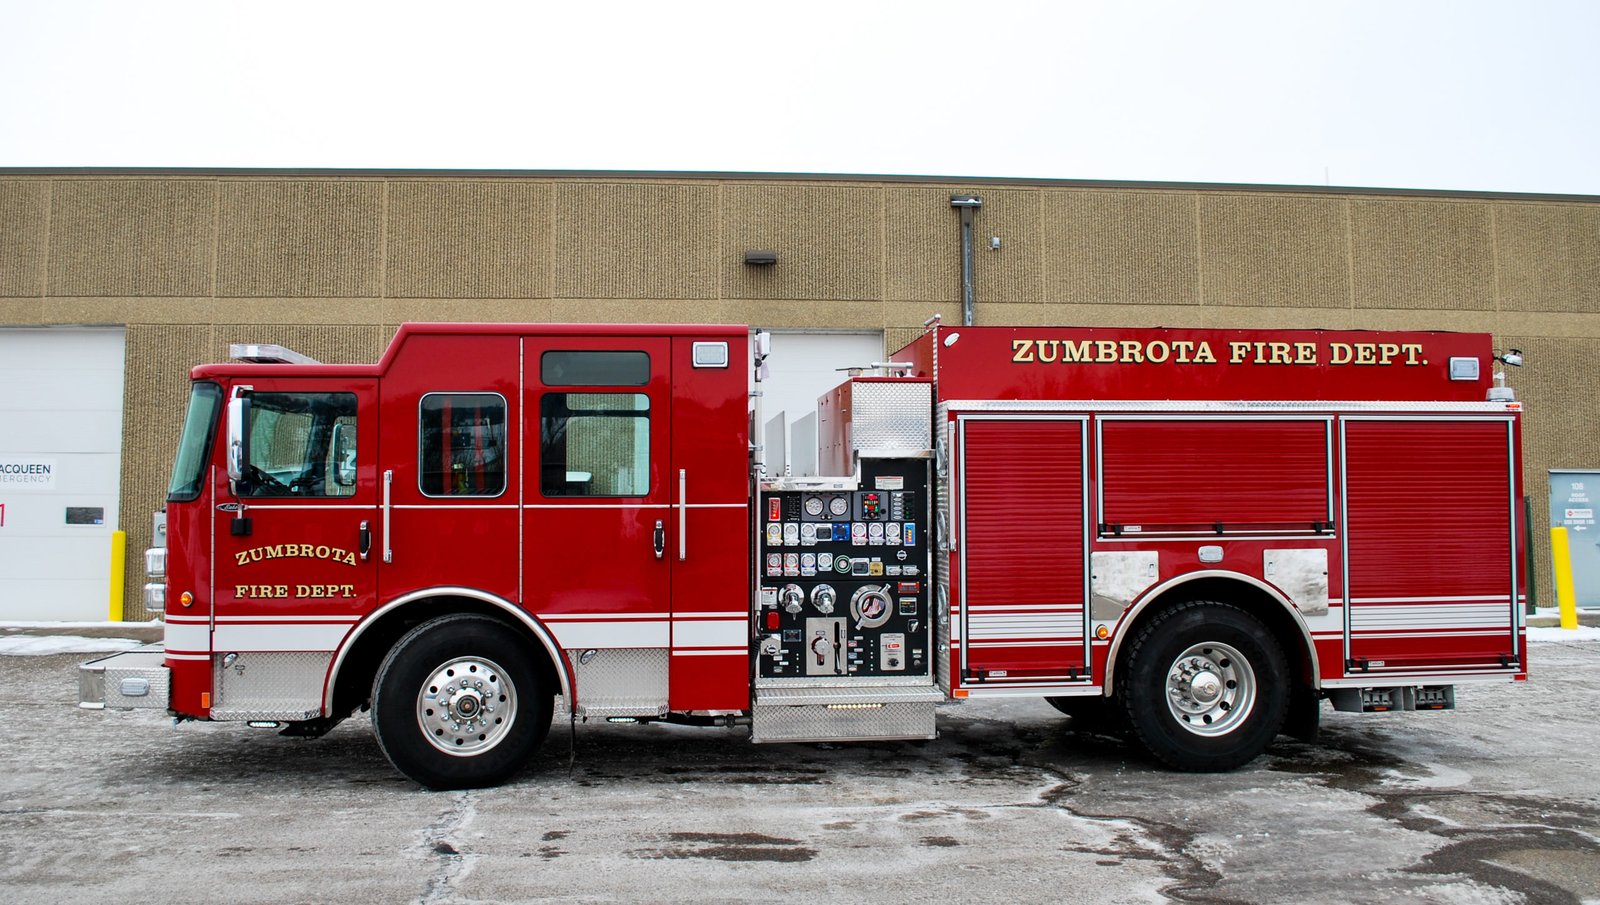 Zumbrota Fire Department - Pumper